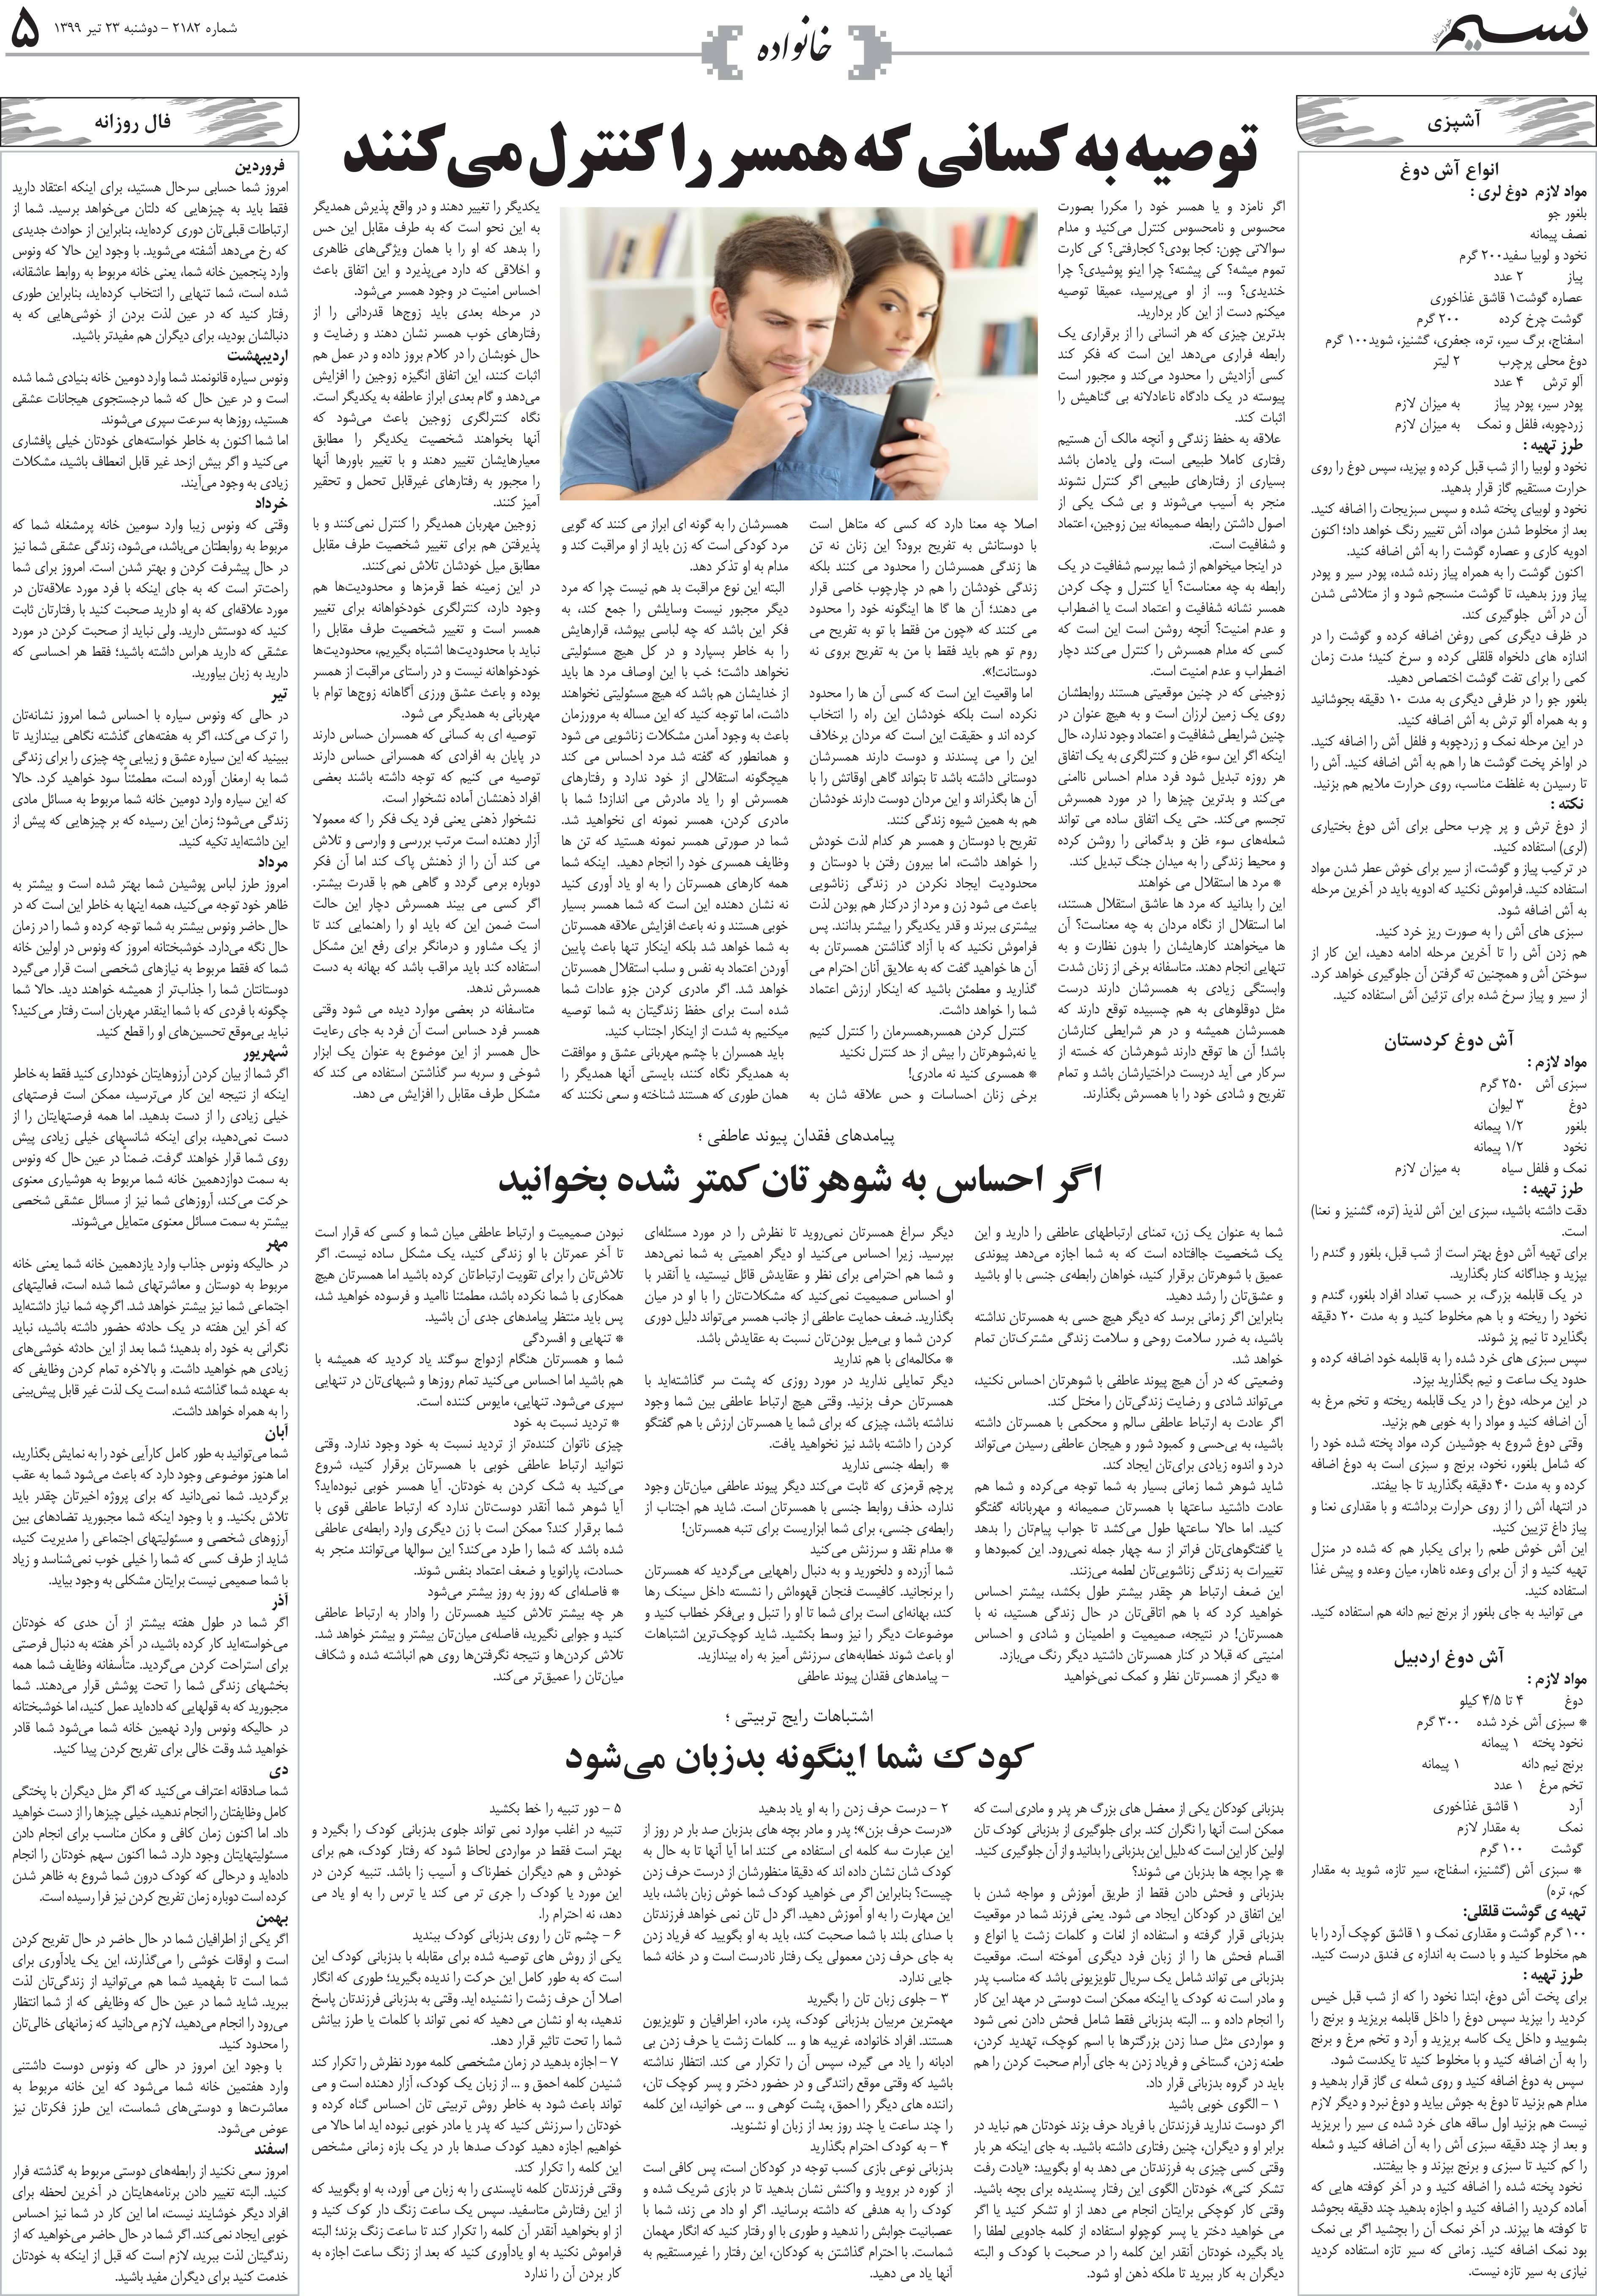 صفحه خانواده روزنامه نسیم شماره 2182